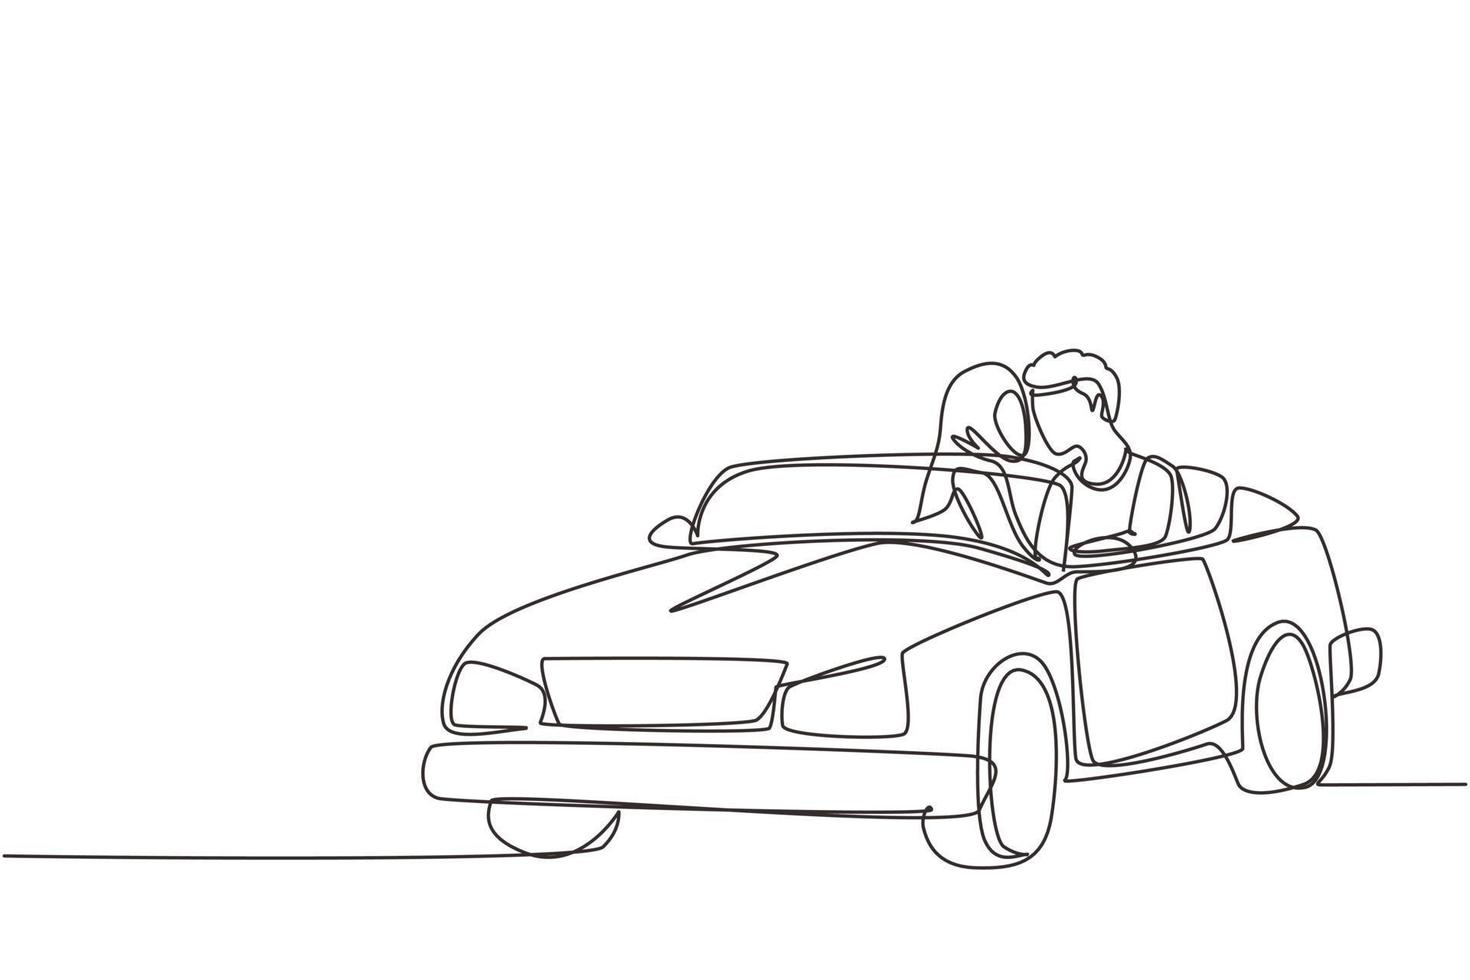 kontinuerlig en rad ritning romantiska arabiska paret åker bil på väg resa. glad man och kvinna som kör i cabrioletbil. par sommar semester resor. en rad rita design vektorgrafik vektor